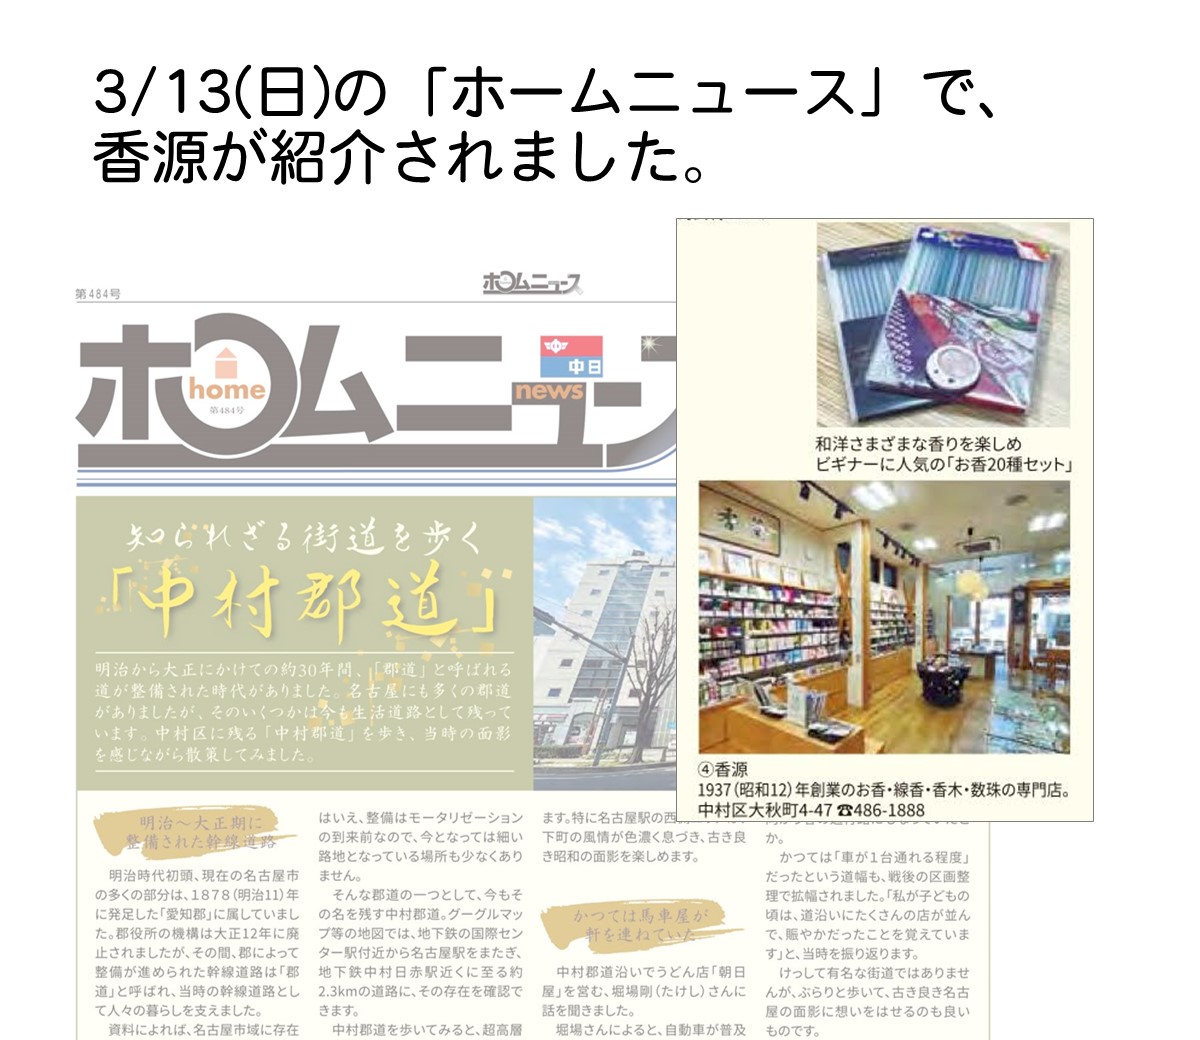 香源名古屋本店がホームニュースで紹介されました。